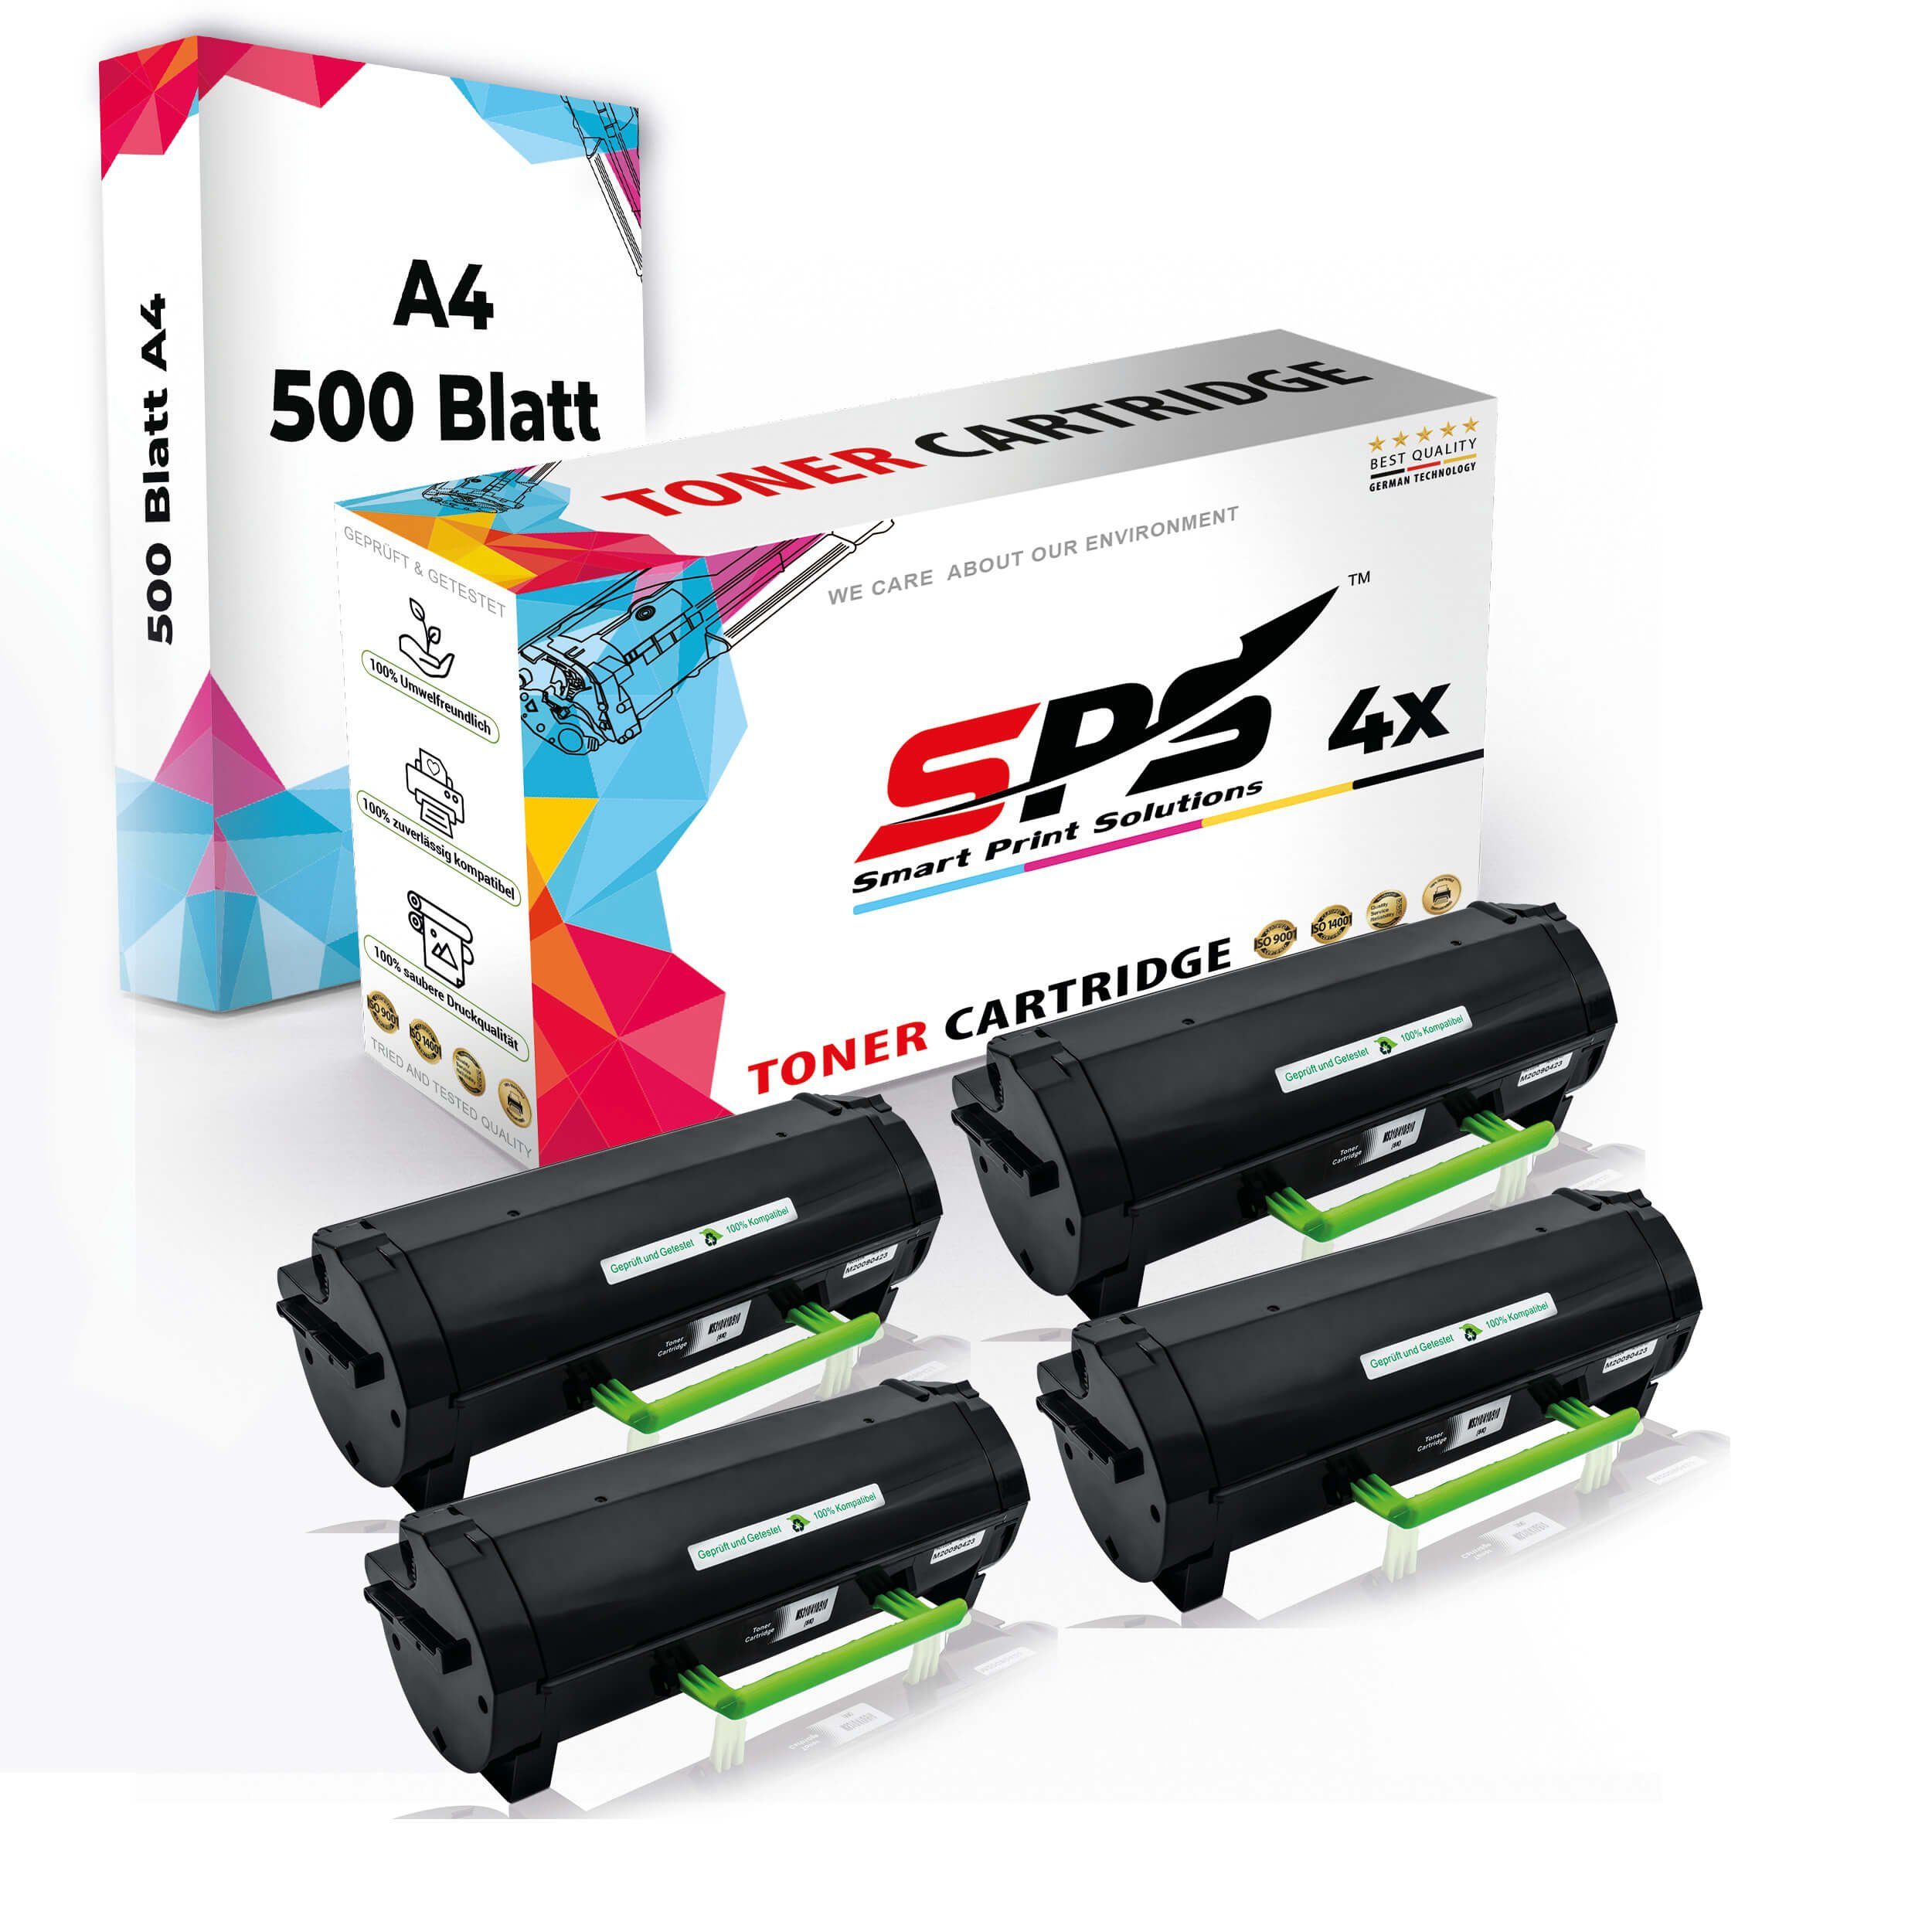 Druckerpapier 4x Kompatibel, SPS Pack, Multipack Set Toner,1x A4 A4 Druckerpapier) + Tonerkartusche (4er 4x